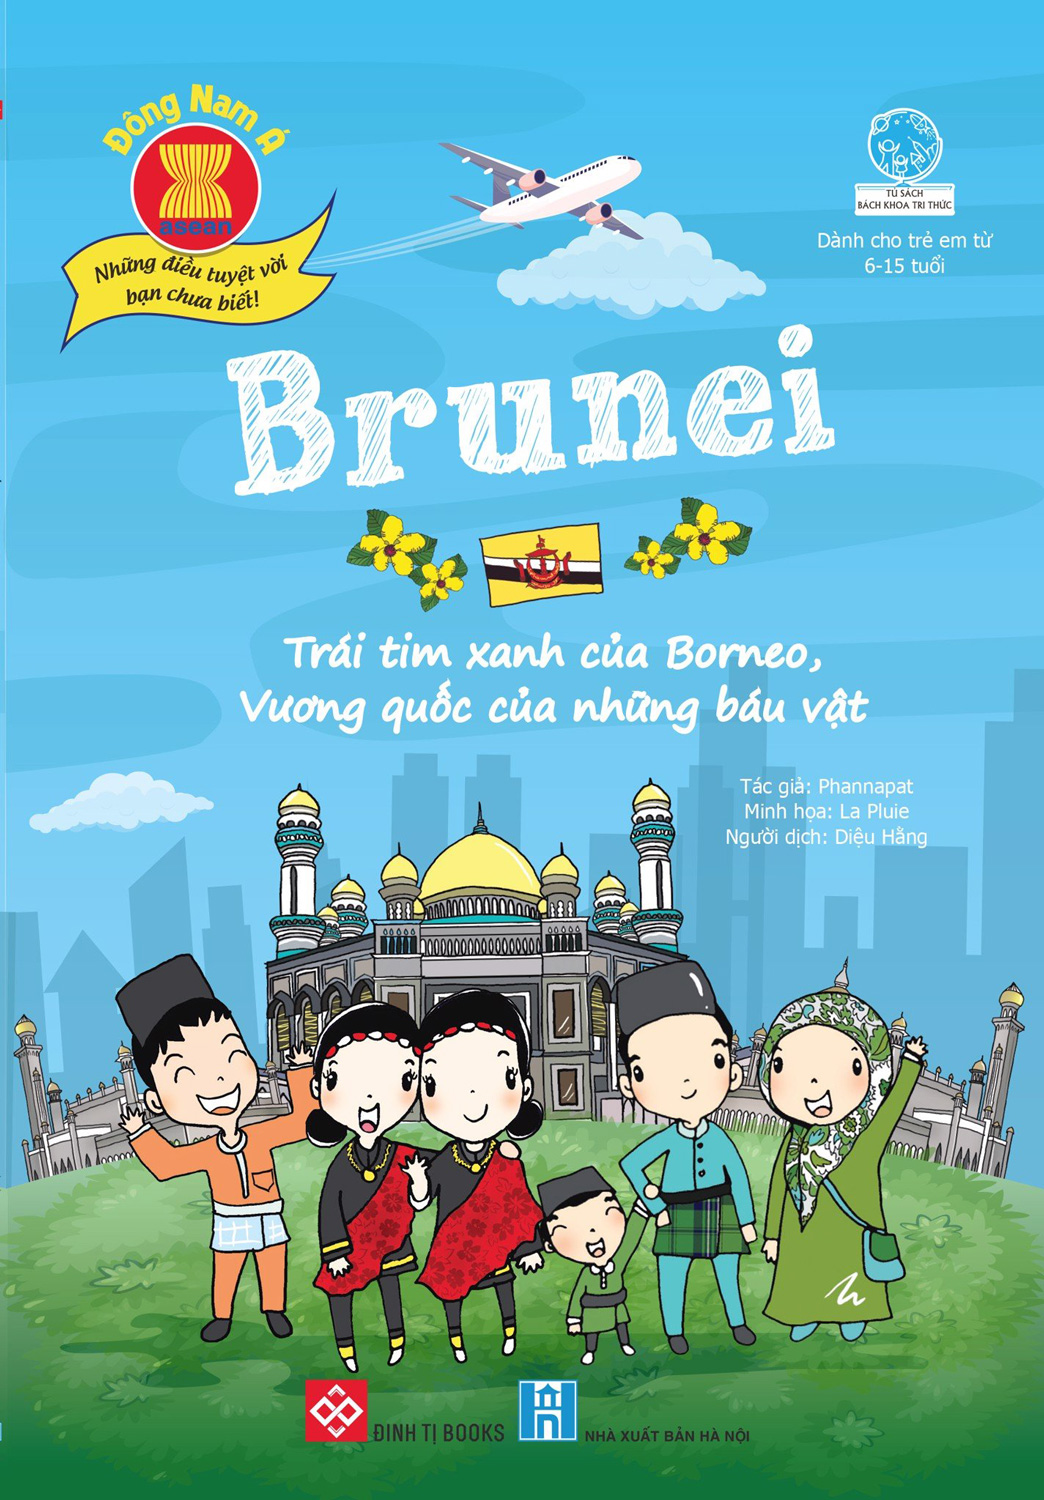 Đông Nam Á - Những Điều Tuyệt Vời Bạn Chưa Biết: Brunei - Trái Tim Xanh Của Borneo, Vương Quốc Của Những Báu Vật